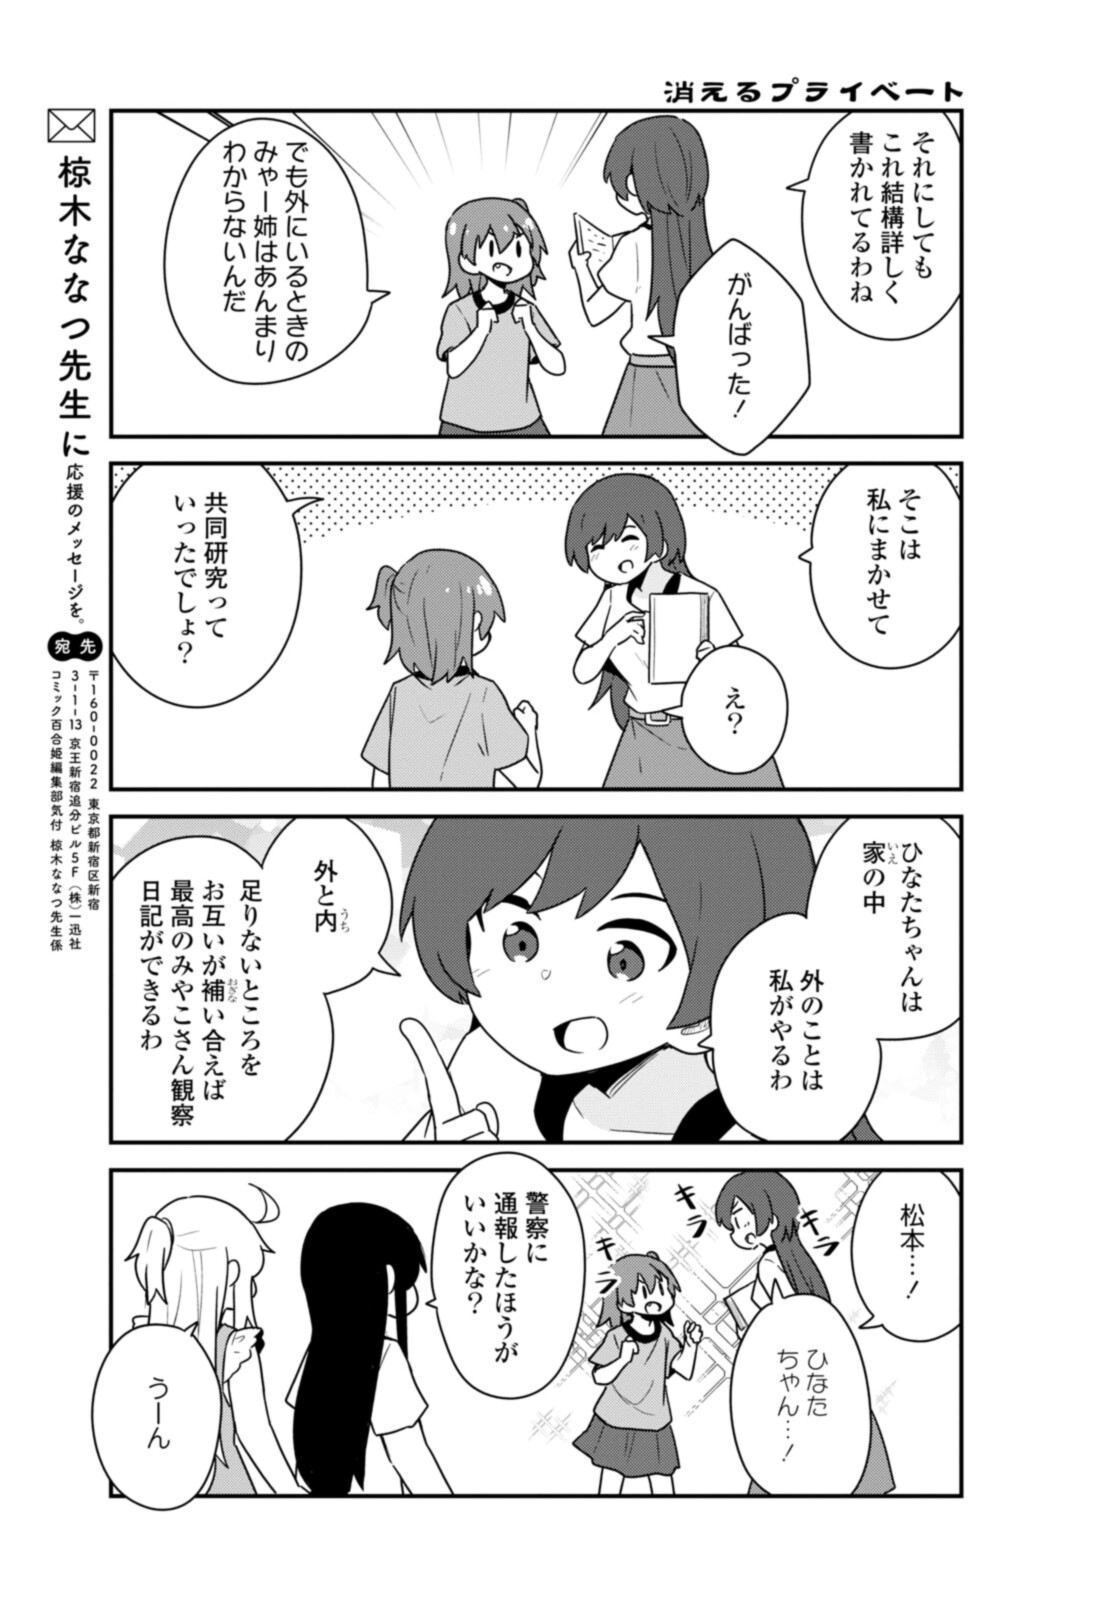 Watashi ni Tenshi ga Maiorita! - Chapter 90 - Page 13